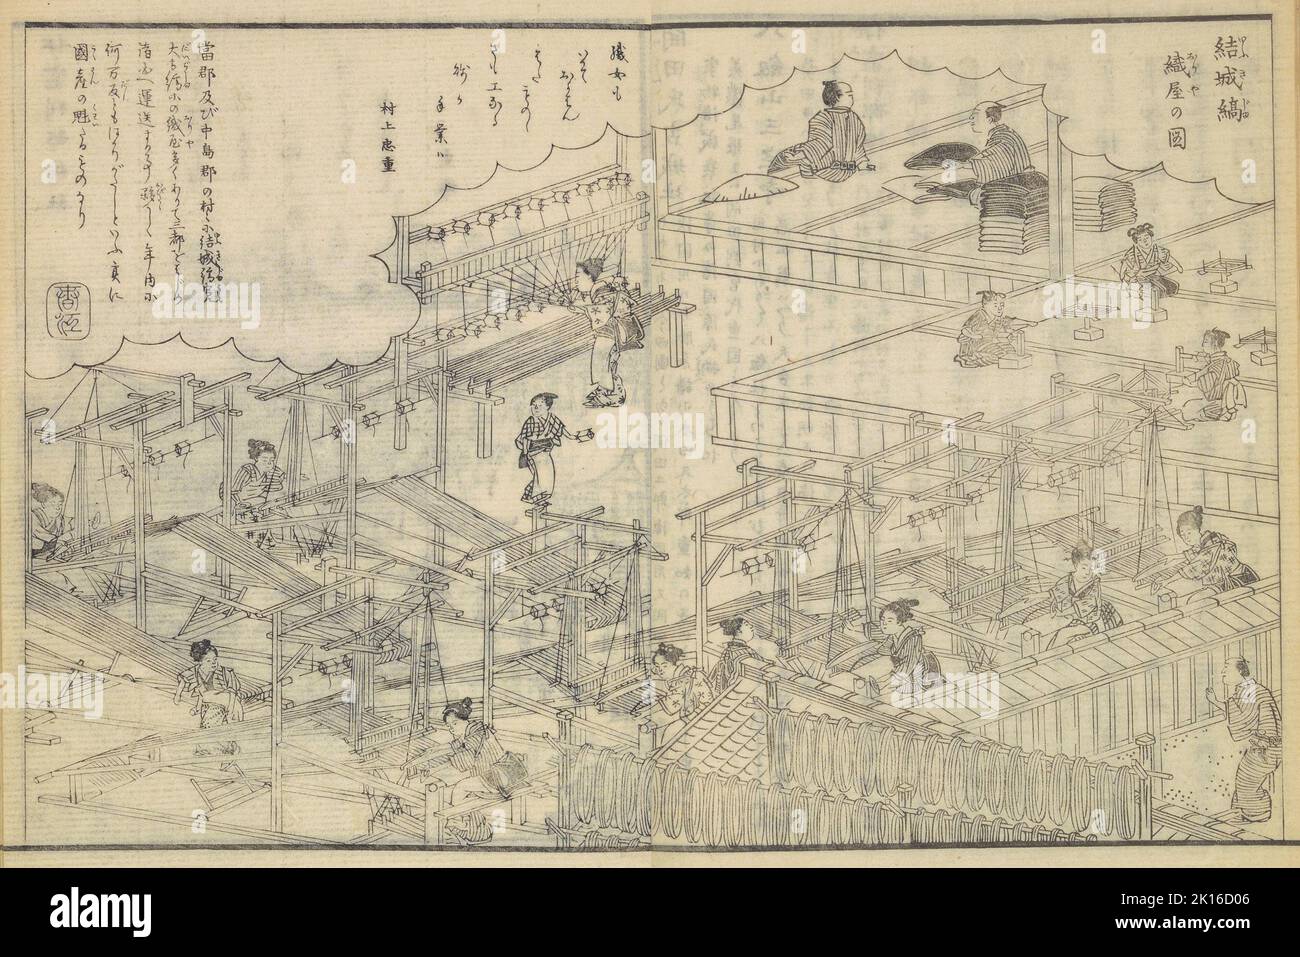 Scène d'Yukijima production tissage, d'Owari meisho zue, publié en 1880 Banque D'Images